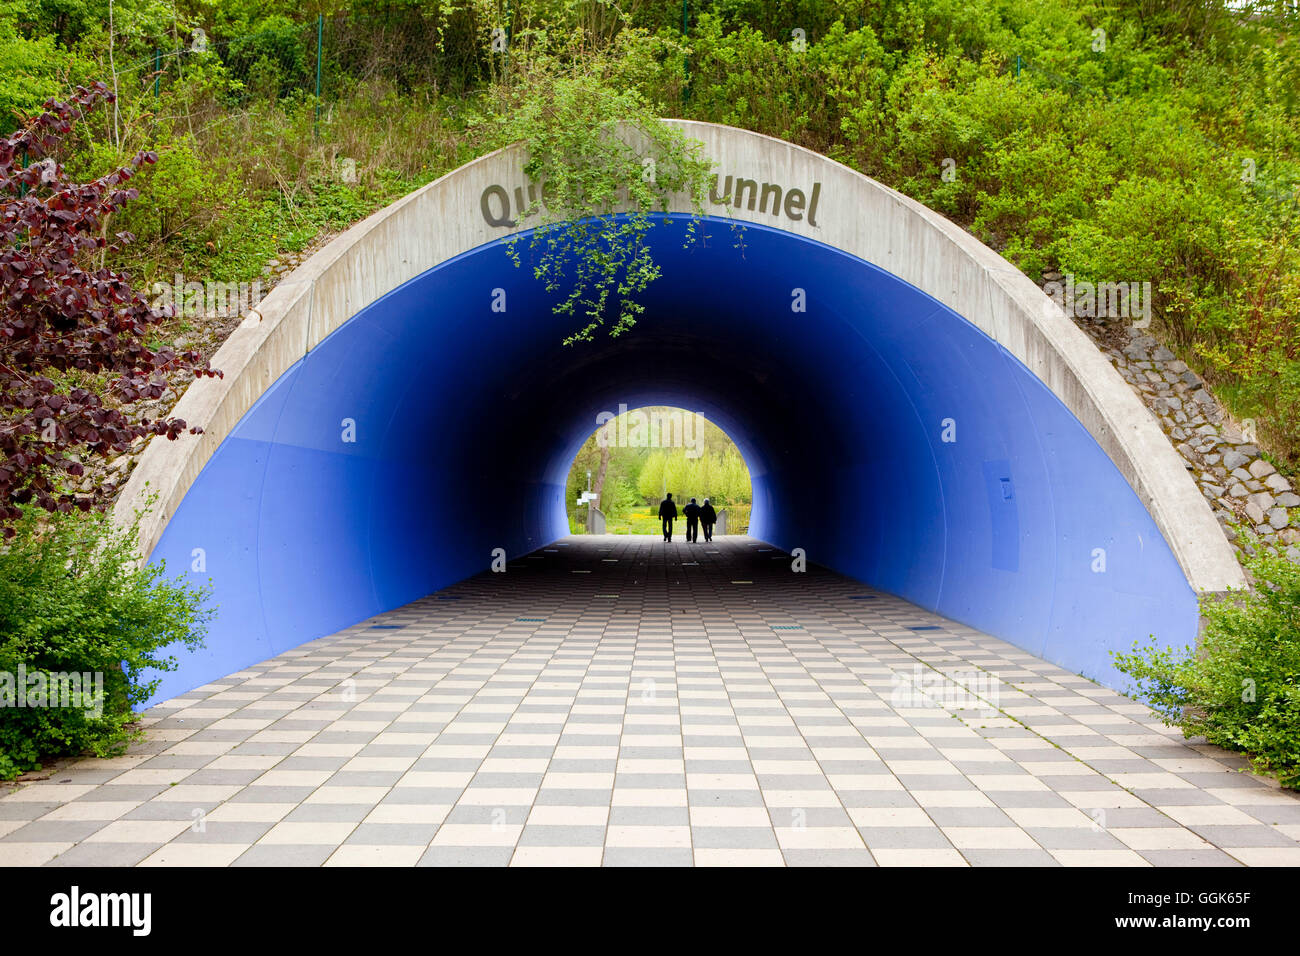 Pedestrians in Quellentunnel tunnel of Landesgartenschau parklands, Bad Wildungen, Hesse, Germany, Europe Stock Photo